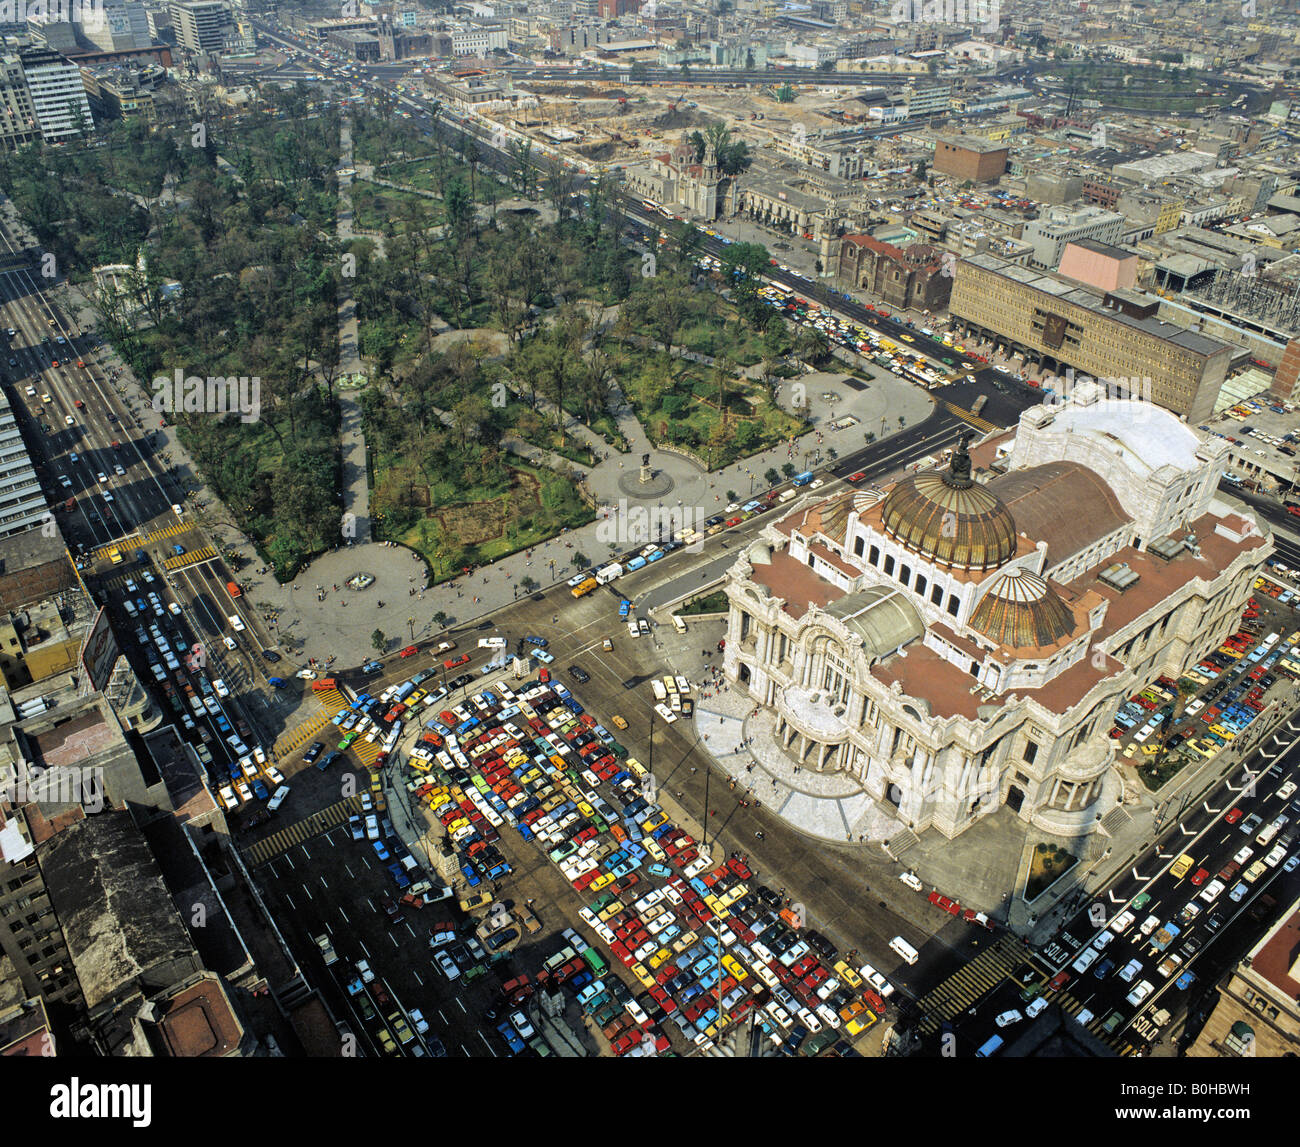 Vista aérea del Palacio de Bellas Artes, Palacio de bellas artes en la Ciudad de México, México, América Central Foto de stock